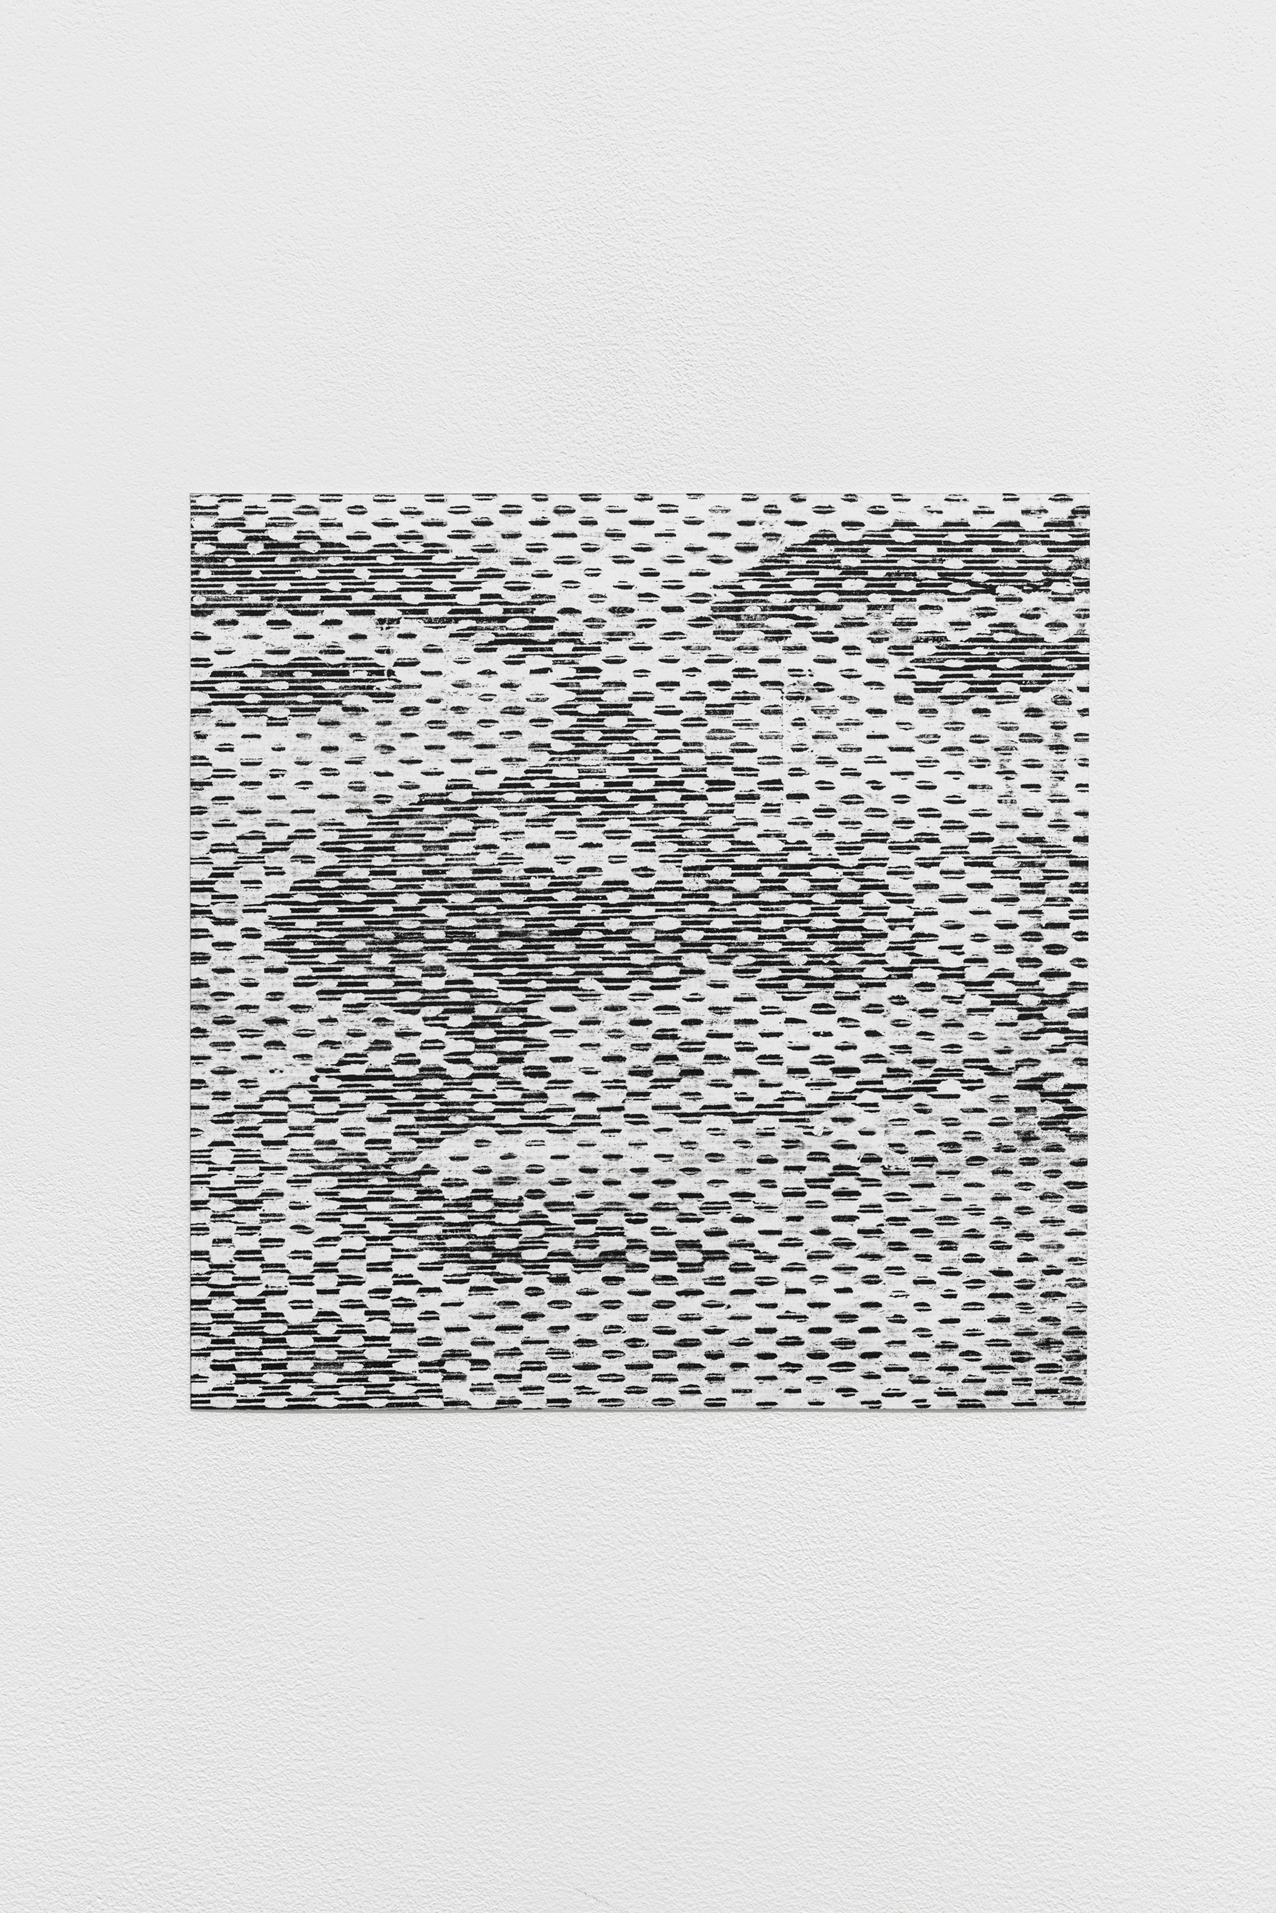 Maxime Le Bon, TchantchÃ¨s #4, 2022, oil and graphit on paper 21,5 x 21,5 cm